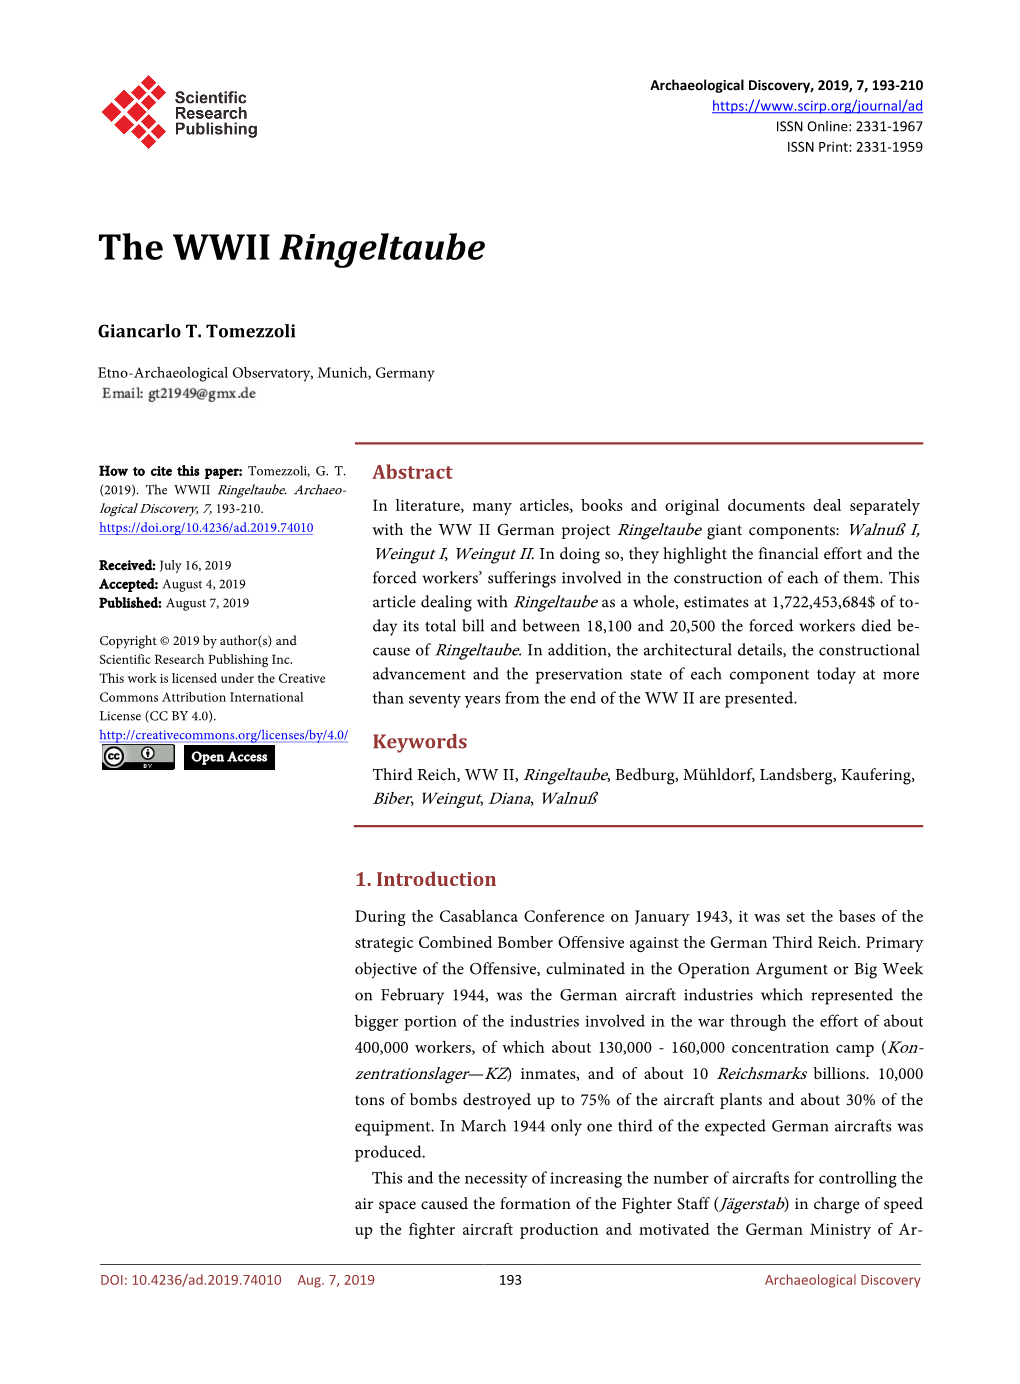 The WWII Ringeltaube